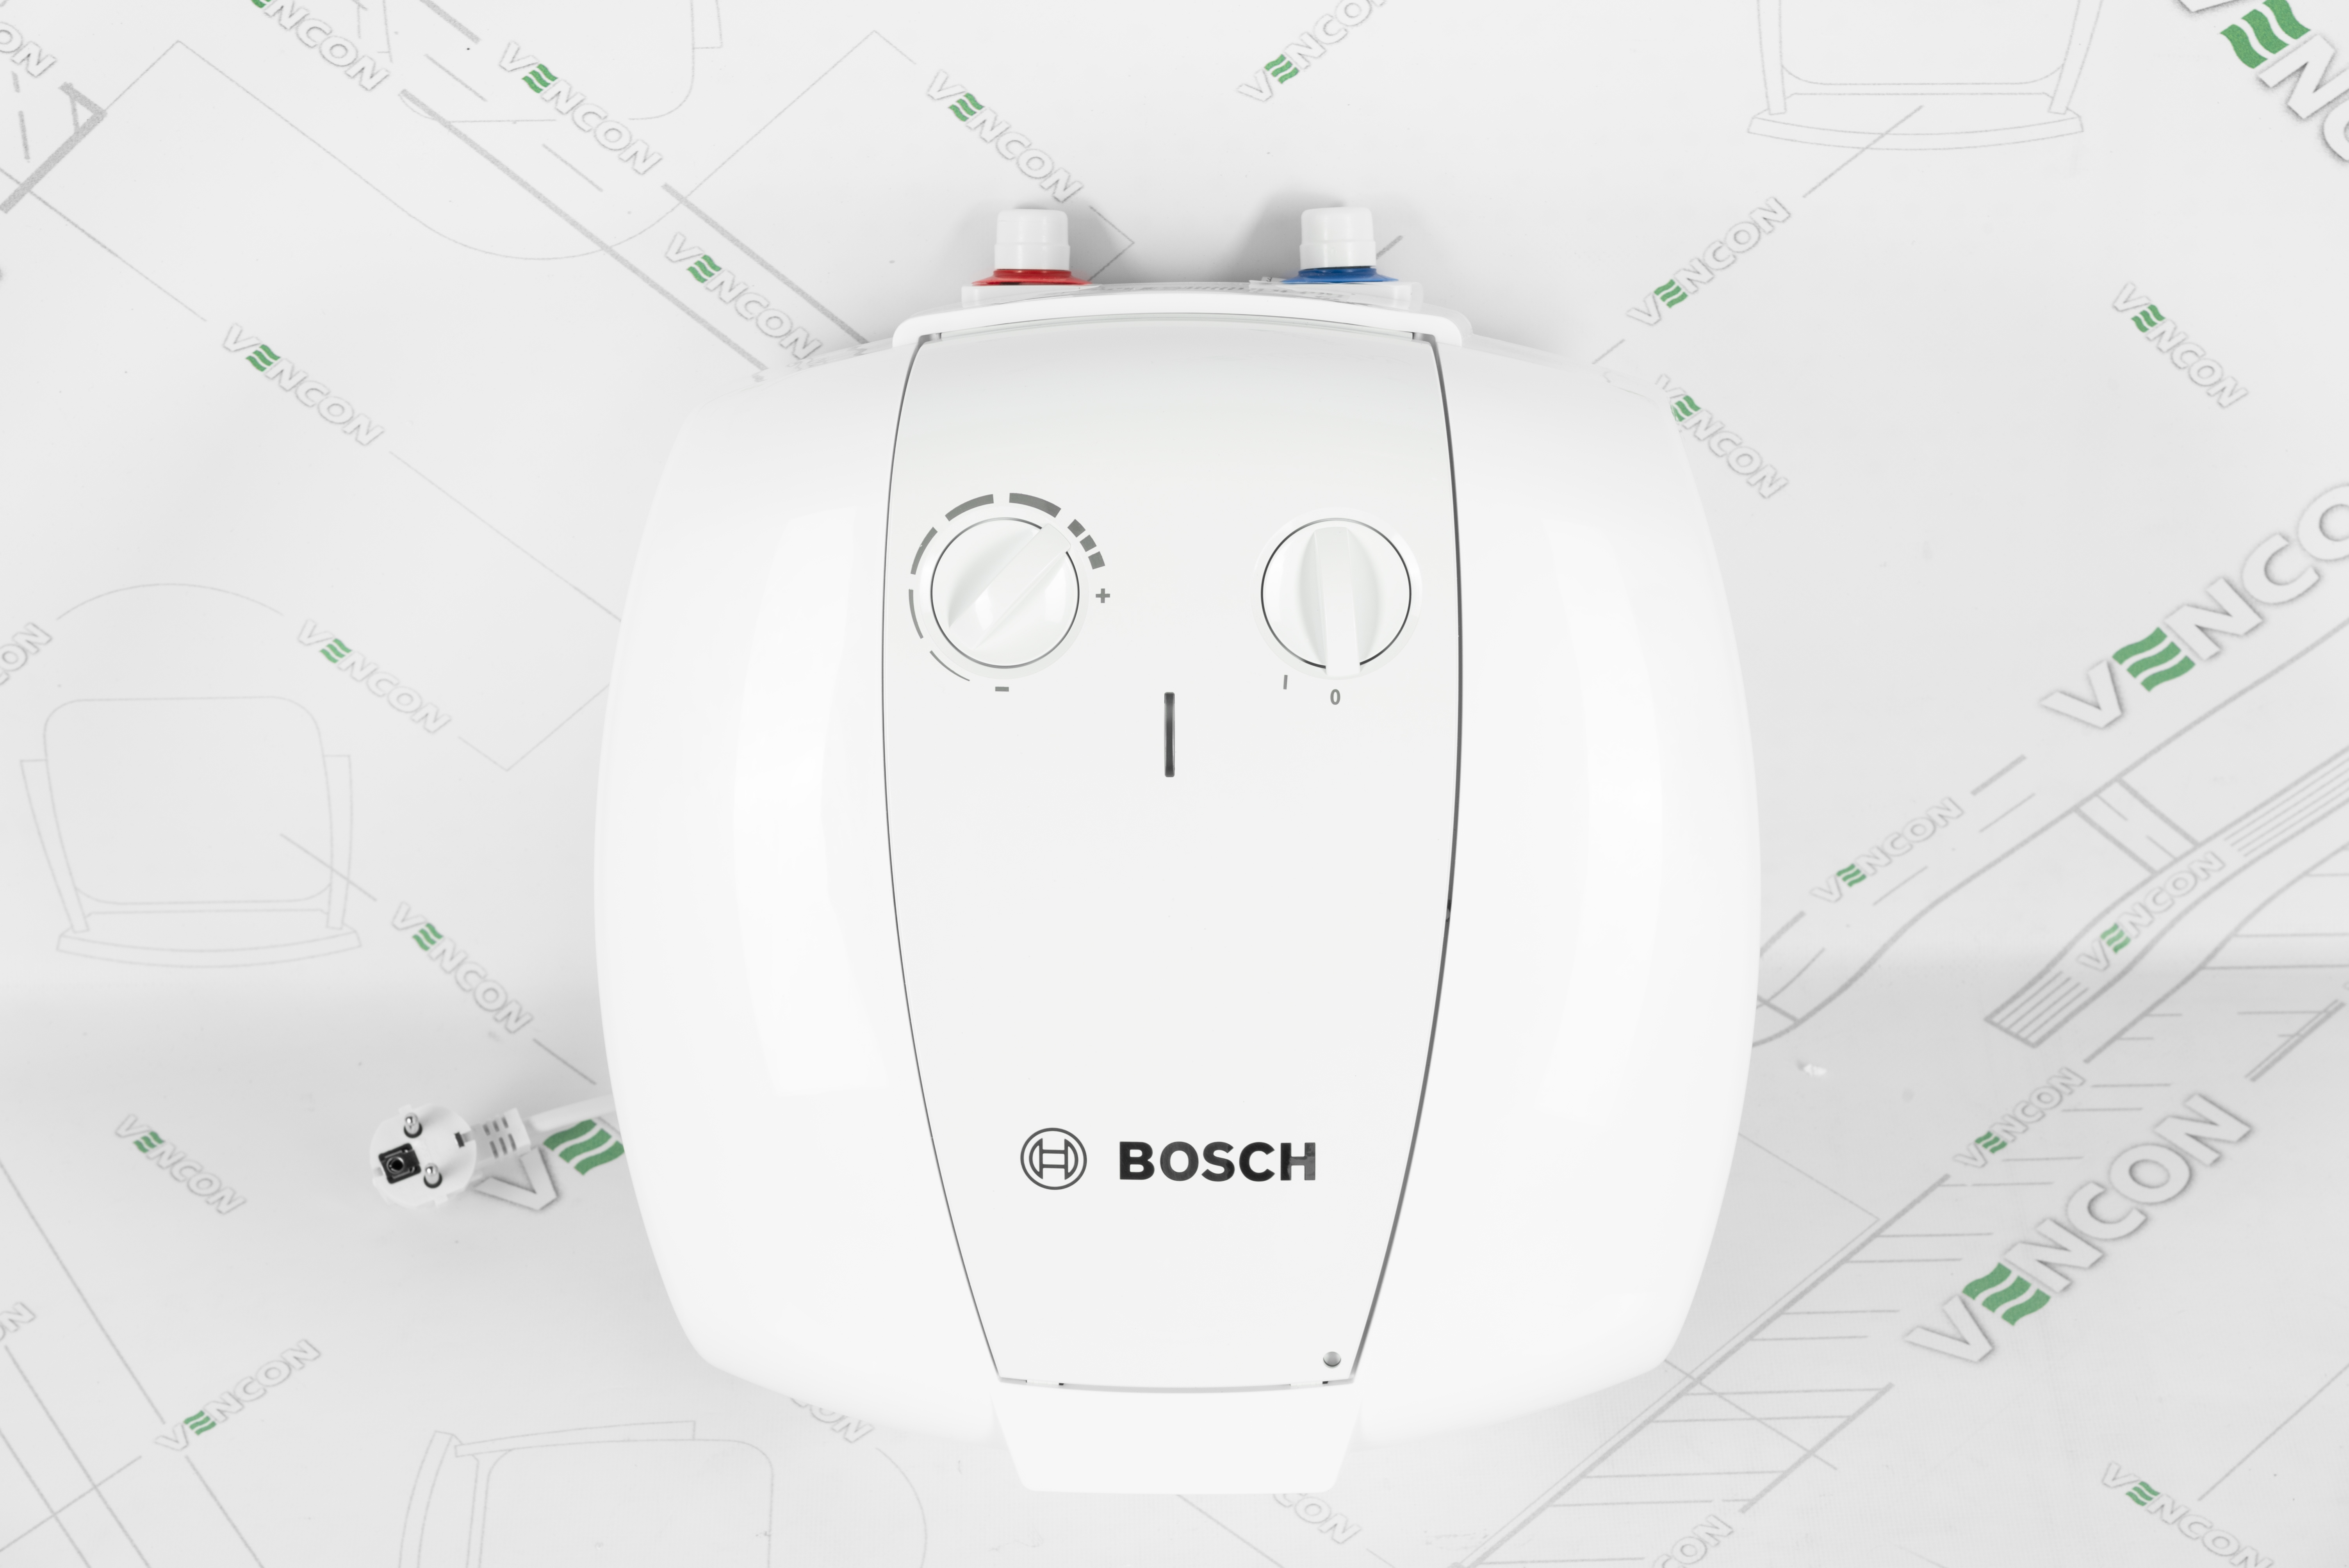 Бойлер Bosch TR 2000 T 10 T (7736504743) цена 4750.00 грн - фотография 2